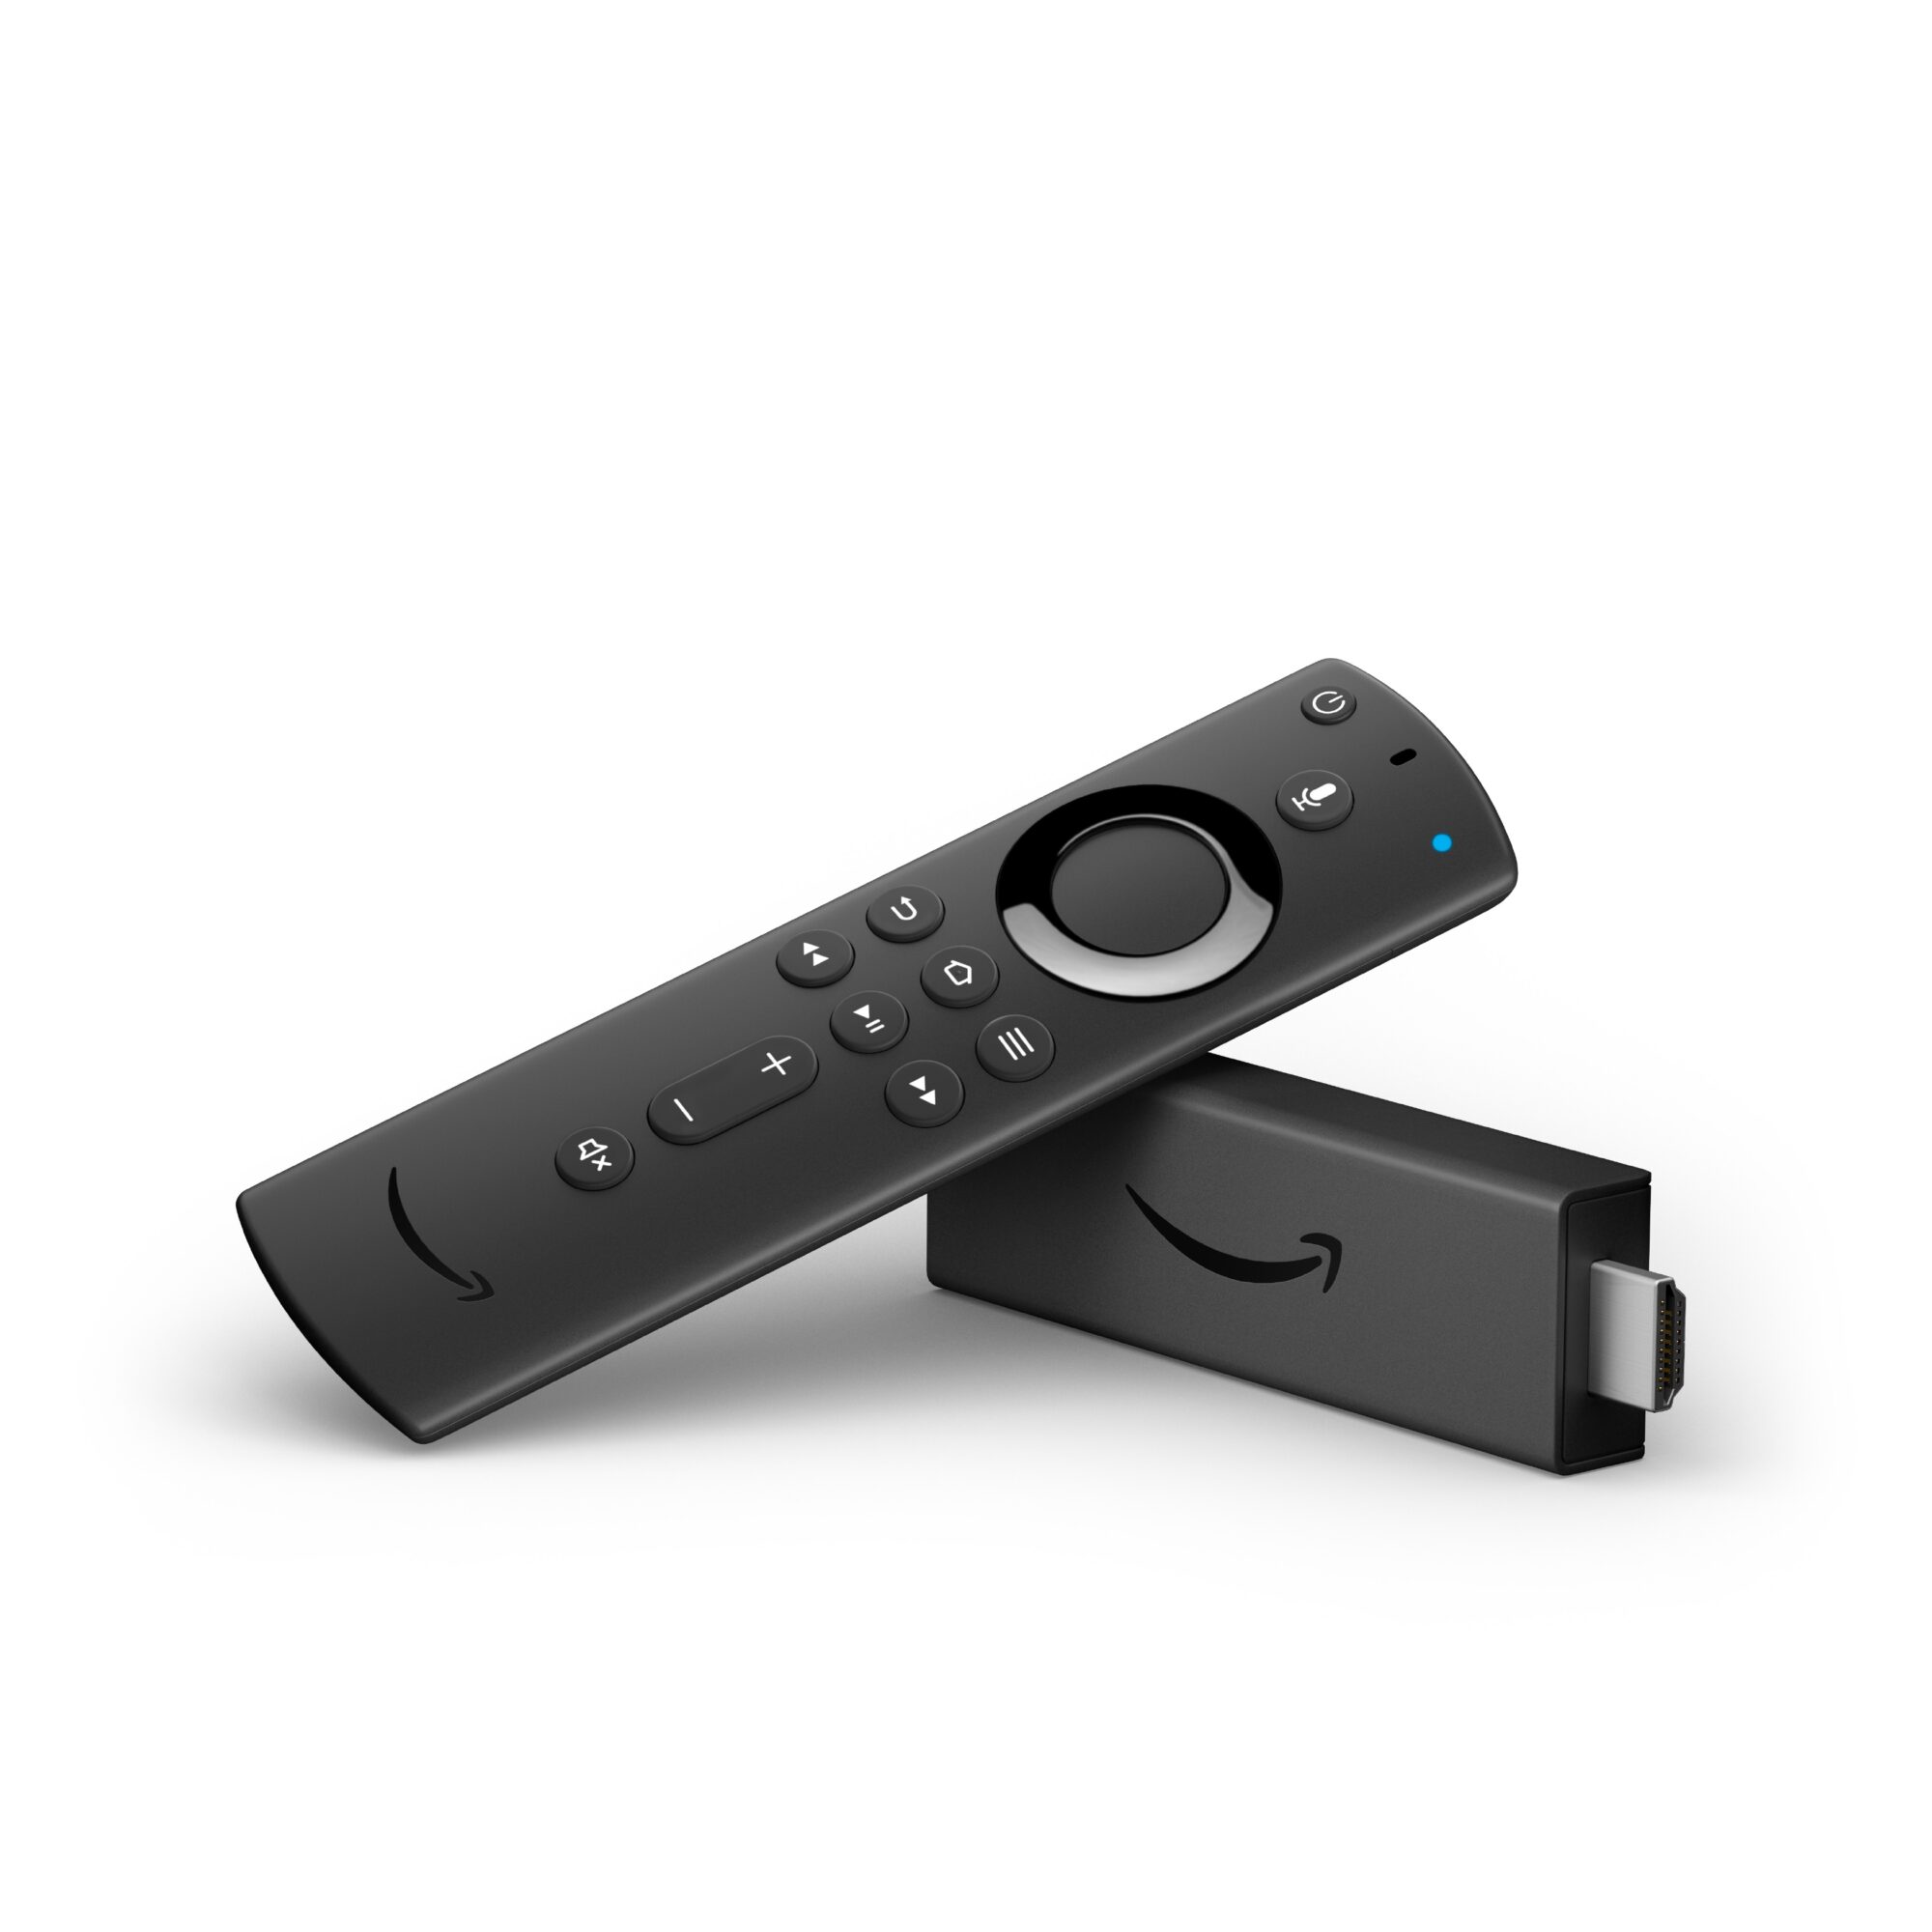 Nuova Amazon Fire Stick TV: caratteristiche, prezzo e disponibilità thumbnail